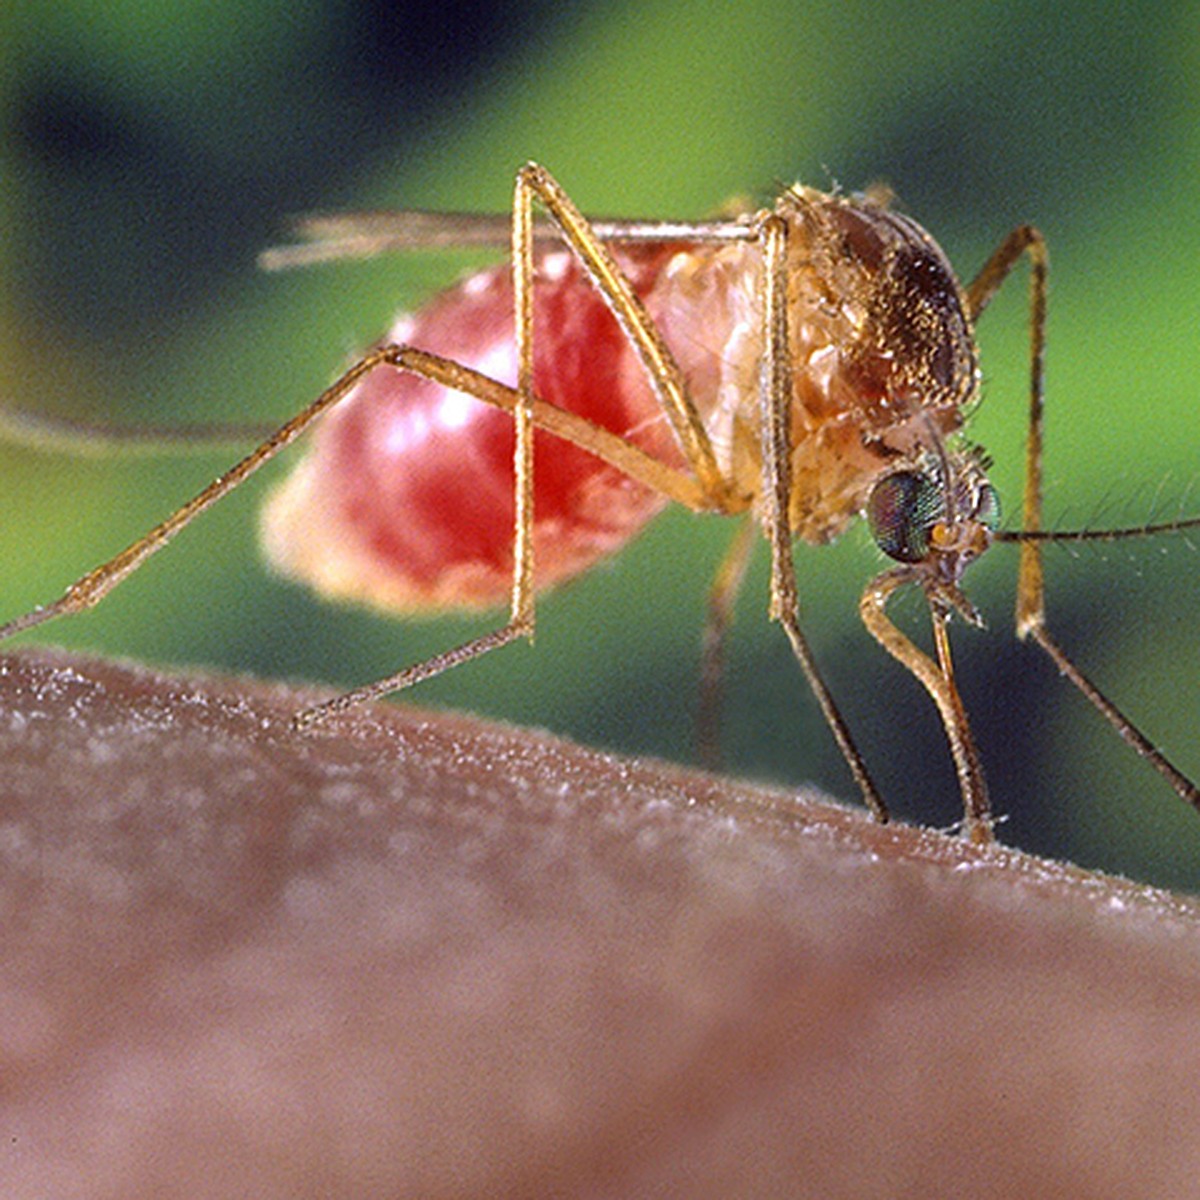 Кого больше любят кусать комары: разбираемся в запахе и группе крови